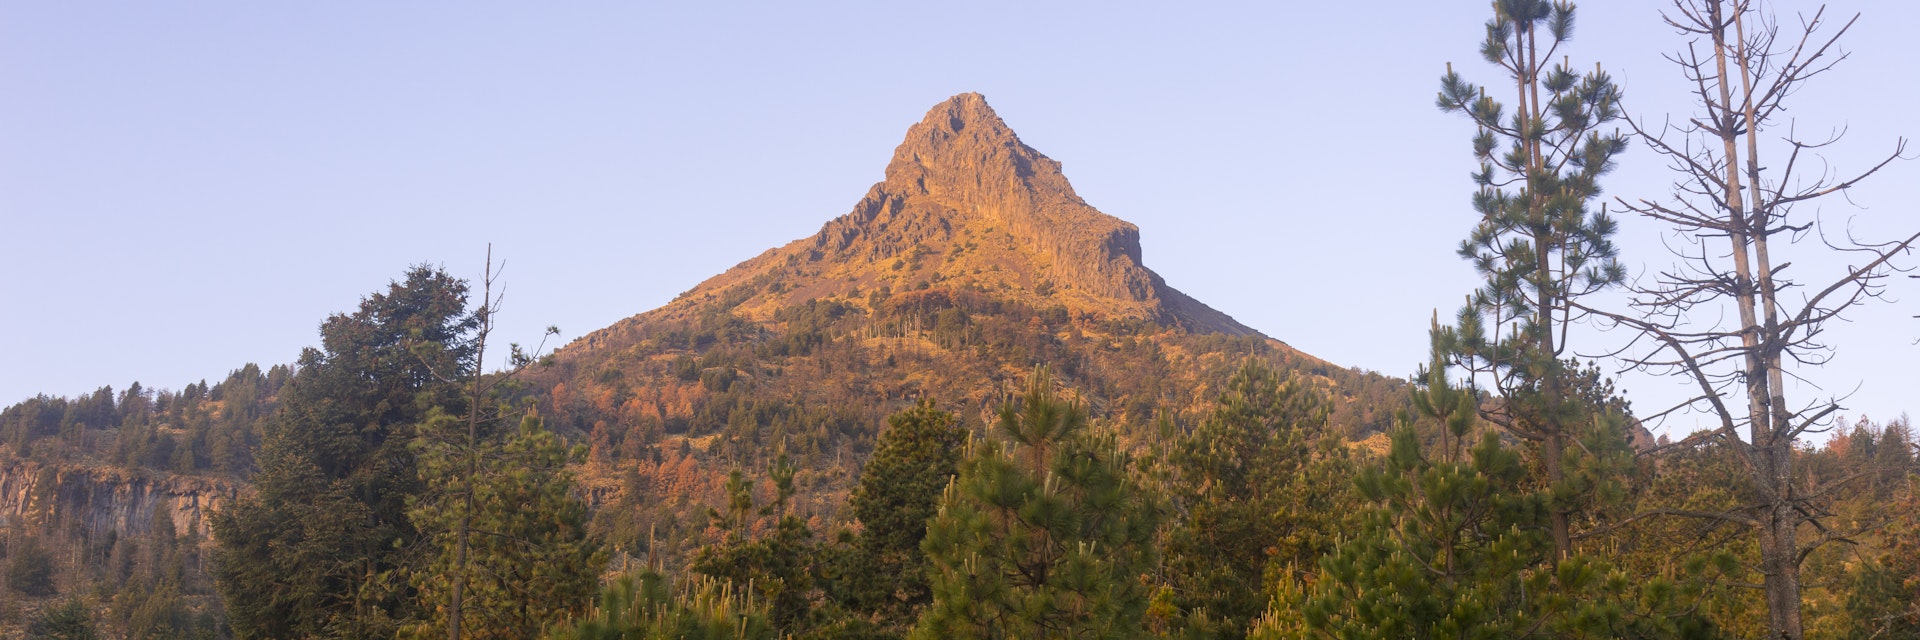 The peak of the Nevado de Colima volcano.